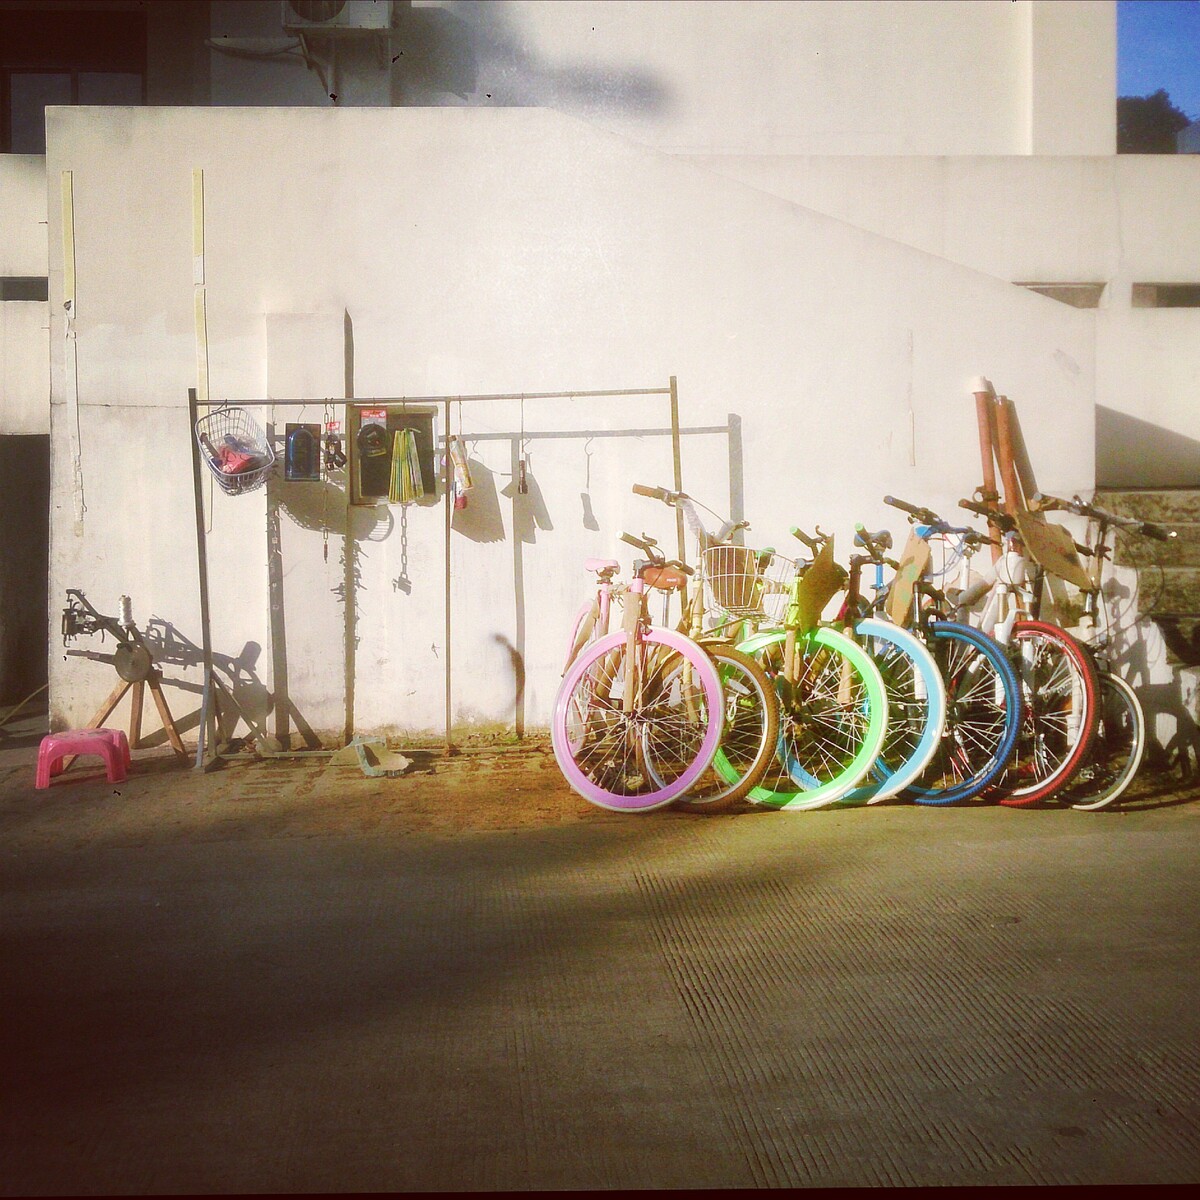 2013.12.03<br />
每次经过宿舍楼下都看到五颜六色的彩虹死飞。终于给我拍到了